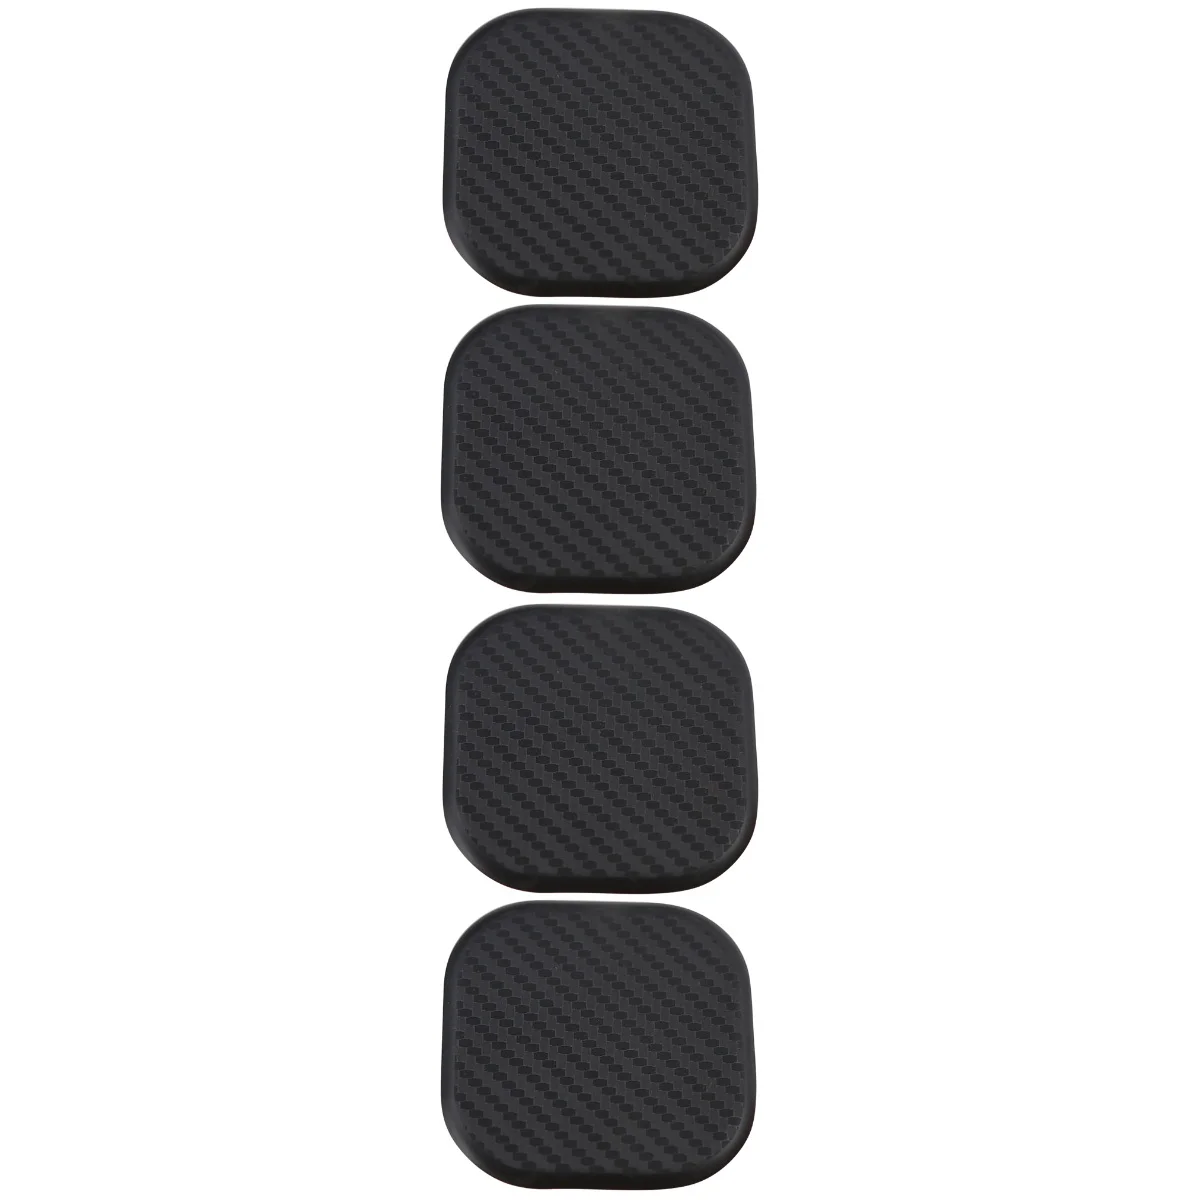 

8 шт. износостойкий автомобильный коврик для чашек удобные автомобильные подставки автомобильный подстаканник нескользящий коврик для кружки для ежедневного использования (квадратный, черный)